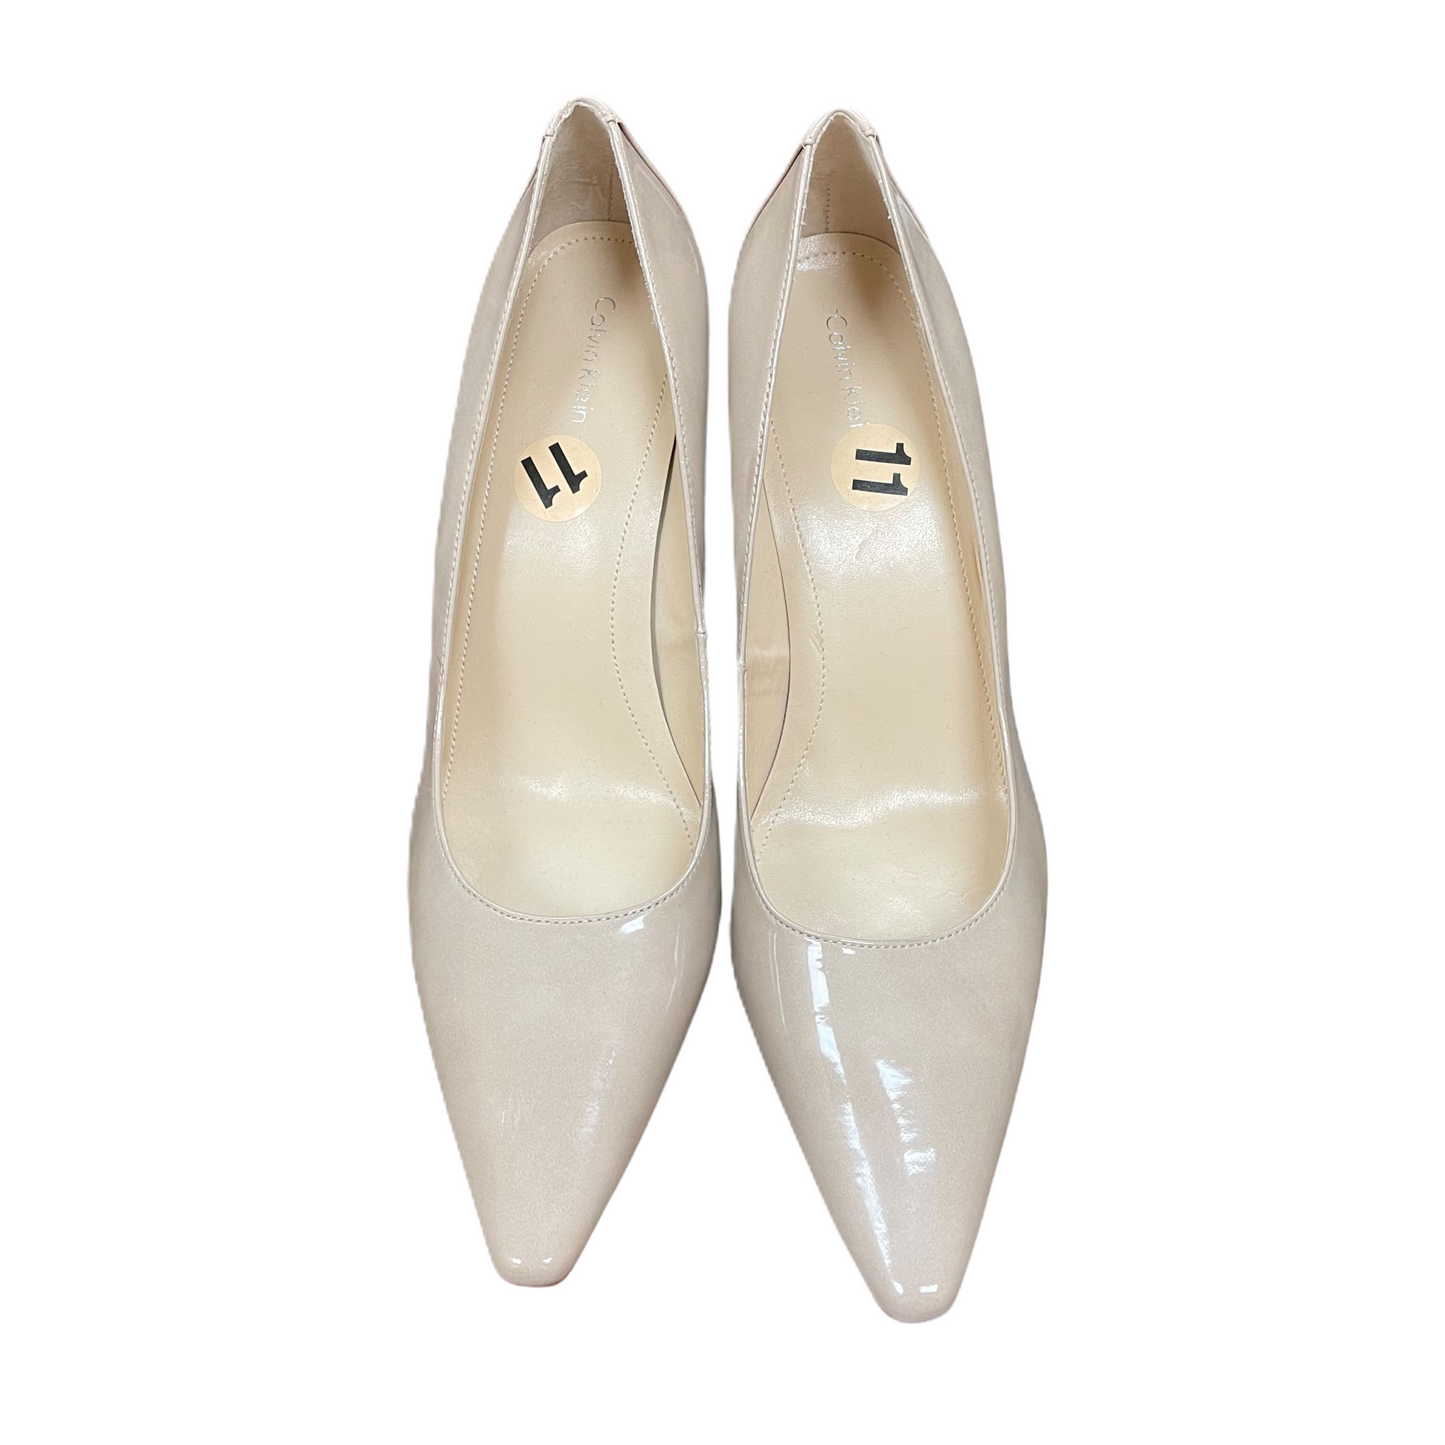 Beige Shoes Heels Stiletto By Calvin Klein, Size: 11